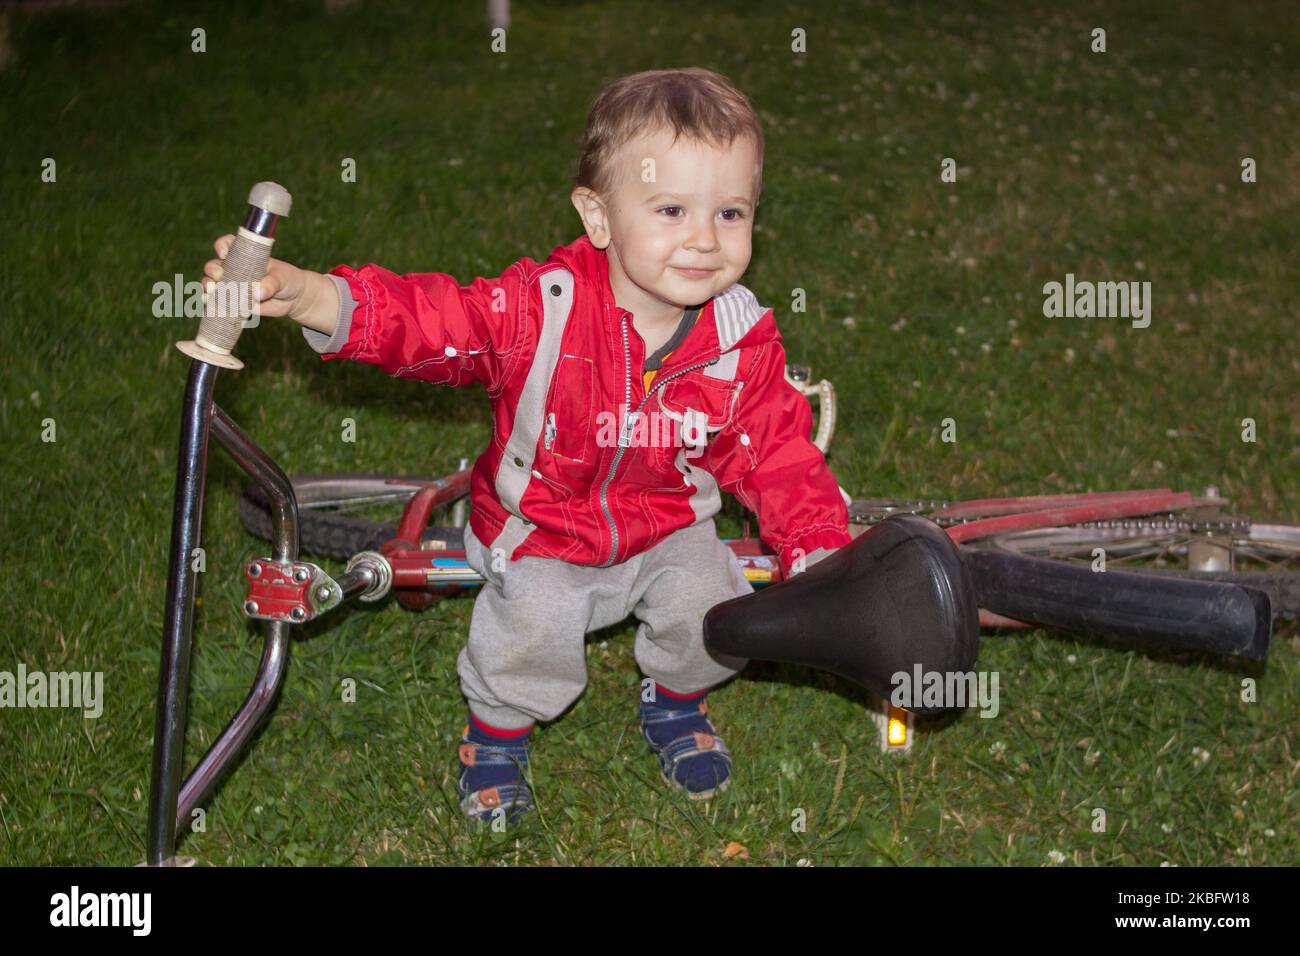 Nachts sitzt ein kleiner Junge auf einem Fahrrad, das auf dem Gras liegt Stockfoto